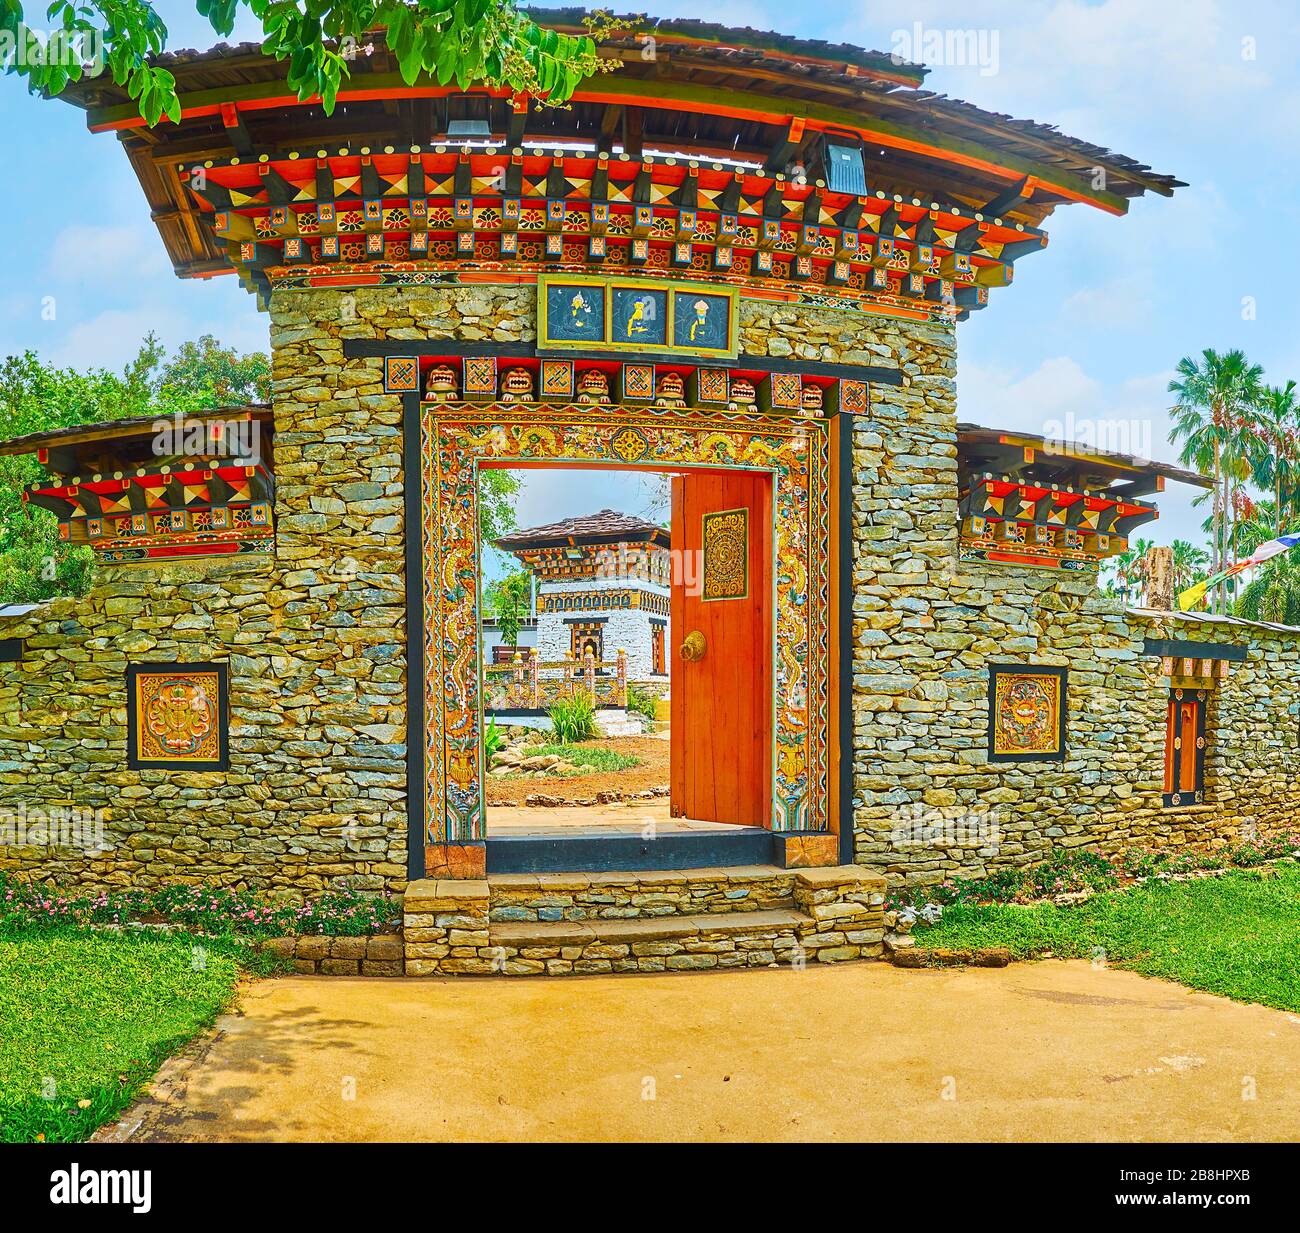 CHIANG mai, THAÏLANDE - 7 MAI 2019: Panorama de la porte de jardin du Bhoutan avec des motifs fins sculptés et peints, images de Bouddha, mur massif de pierre, complexe r Banque D'Images